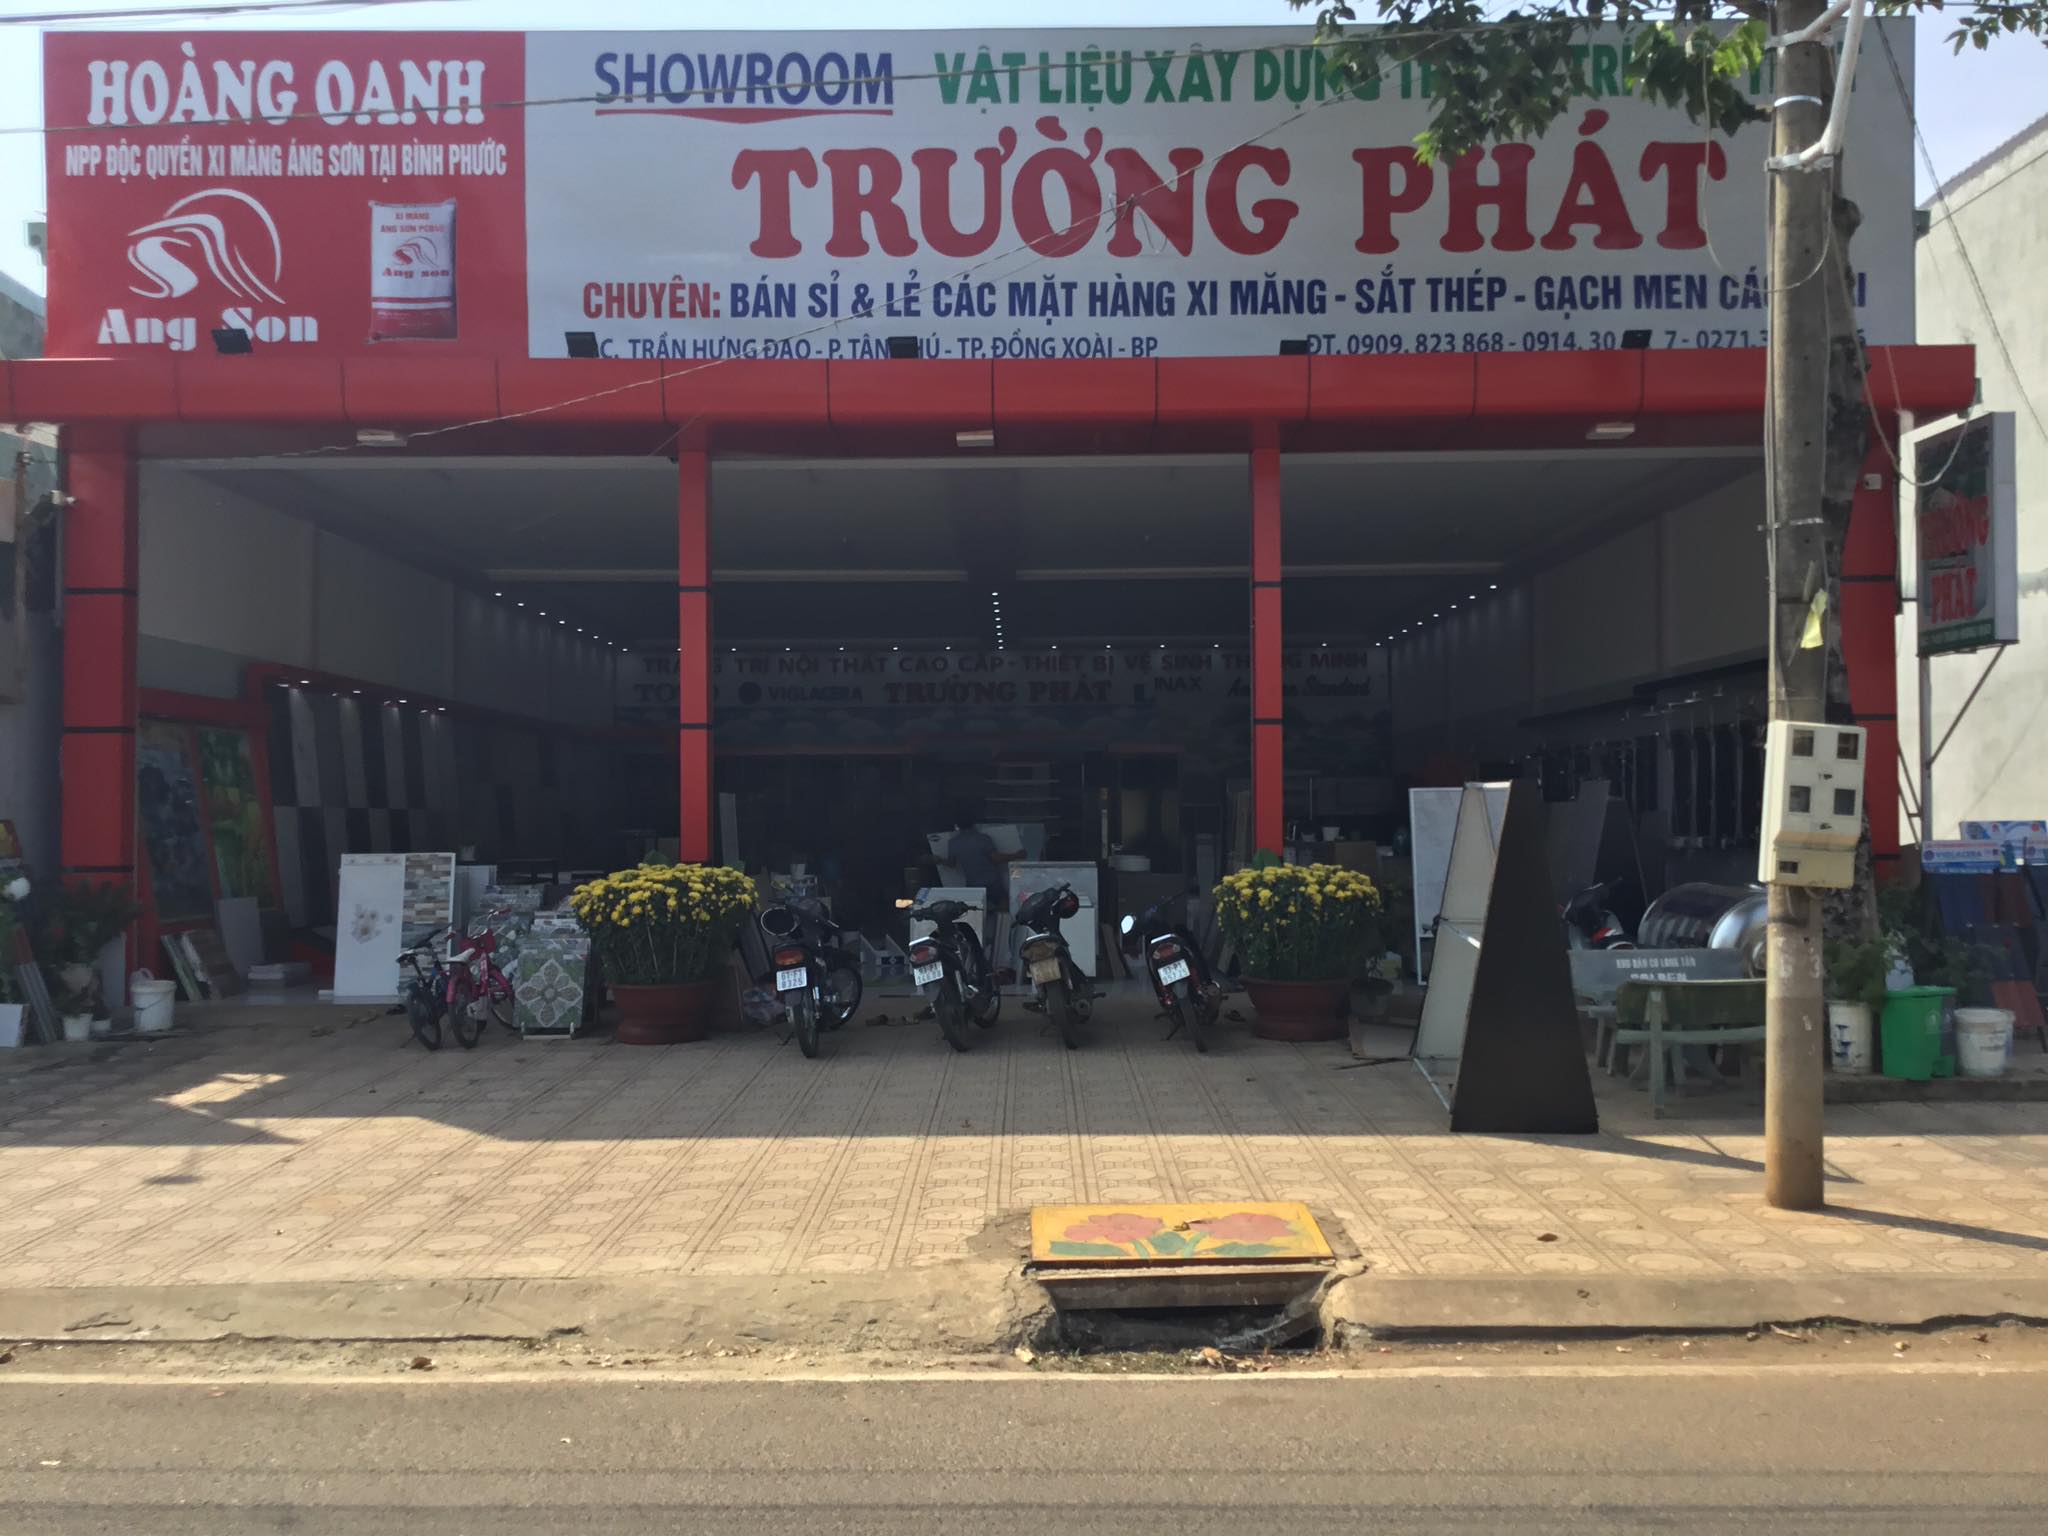 THIẾT KẾ NỘI THẤT cửa hàng vật liệu xây dựng ở Bình Định